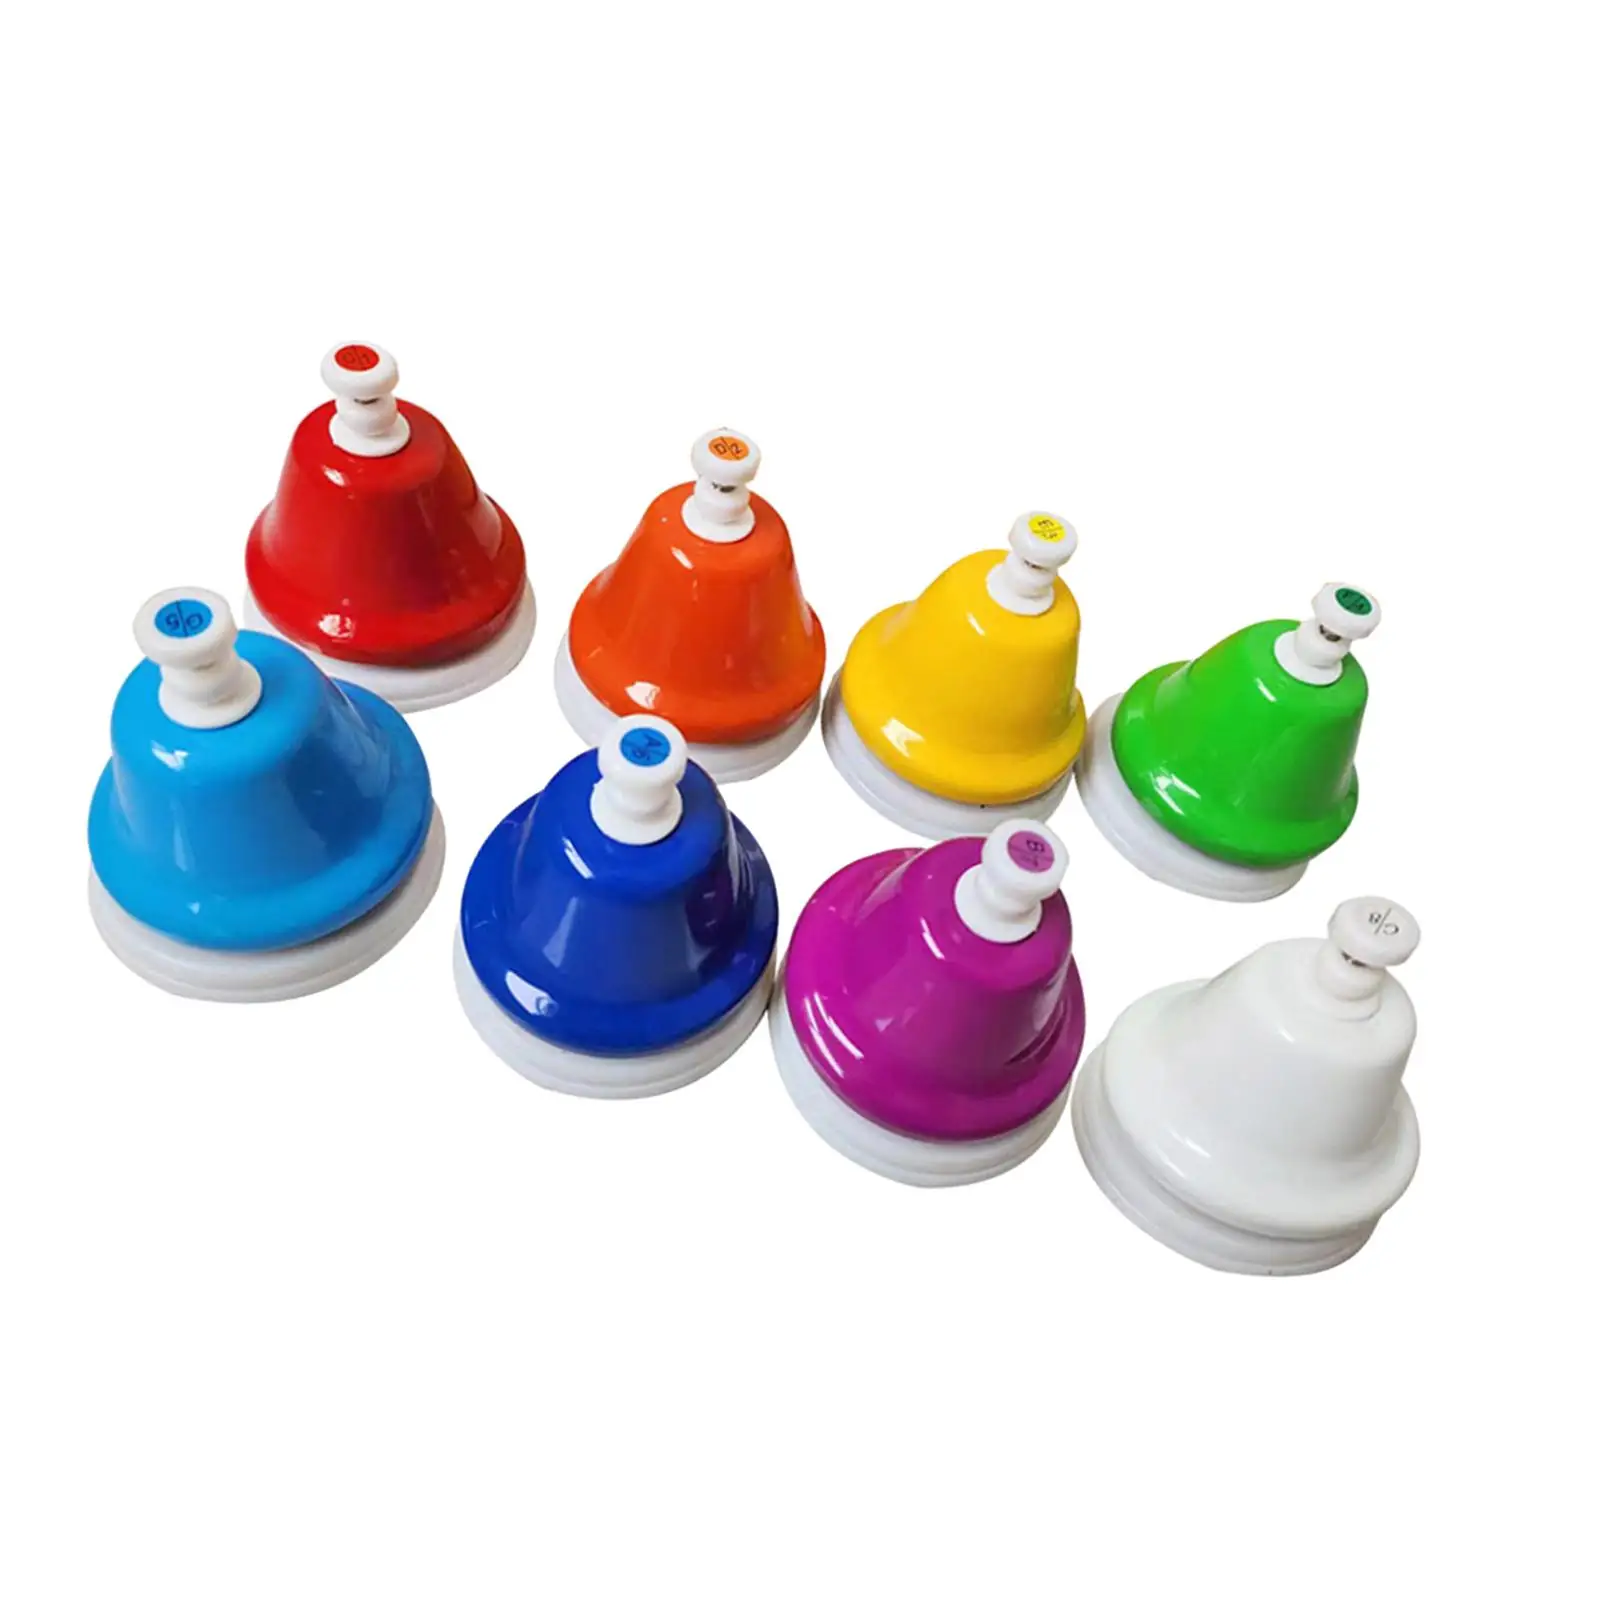 Desk Bells for Kids Colorful Hand Bells Set Handheld Percussion Bells